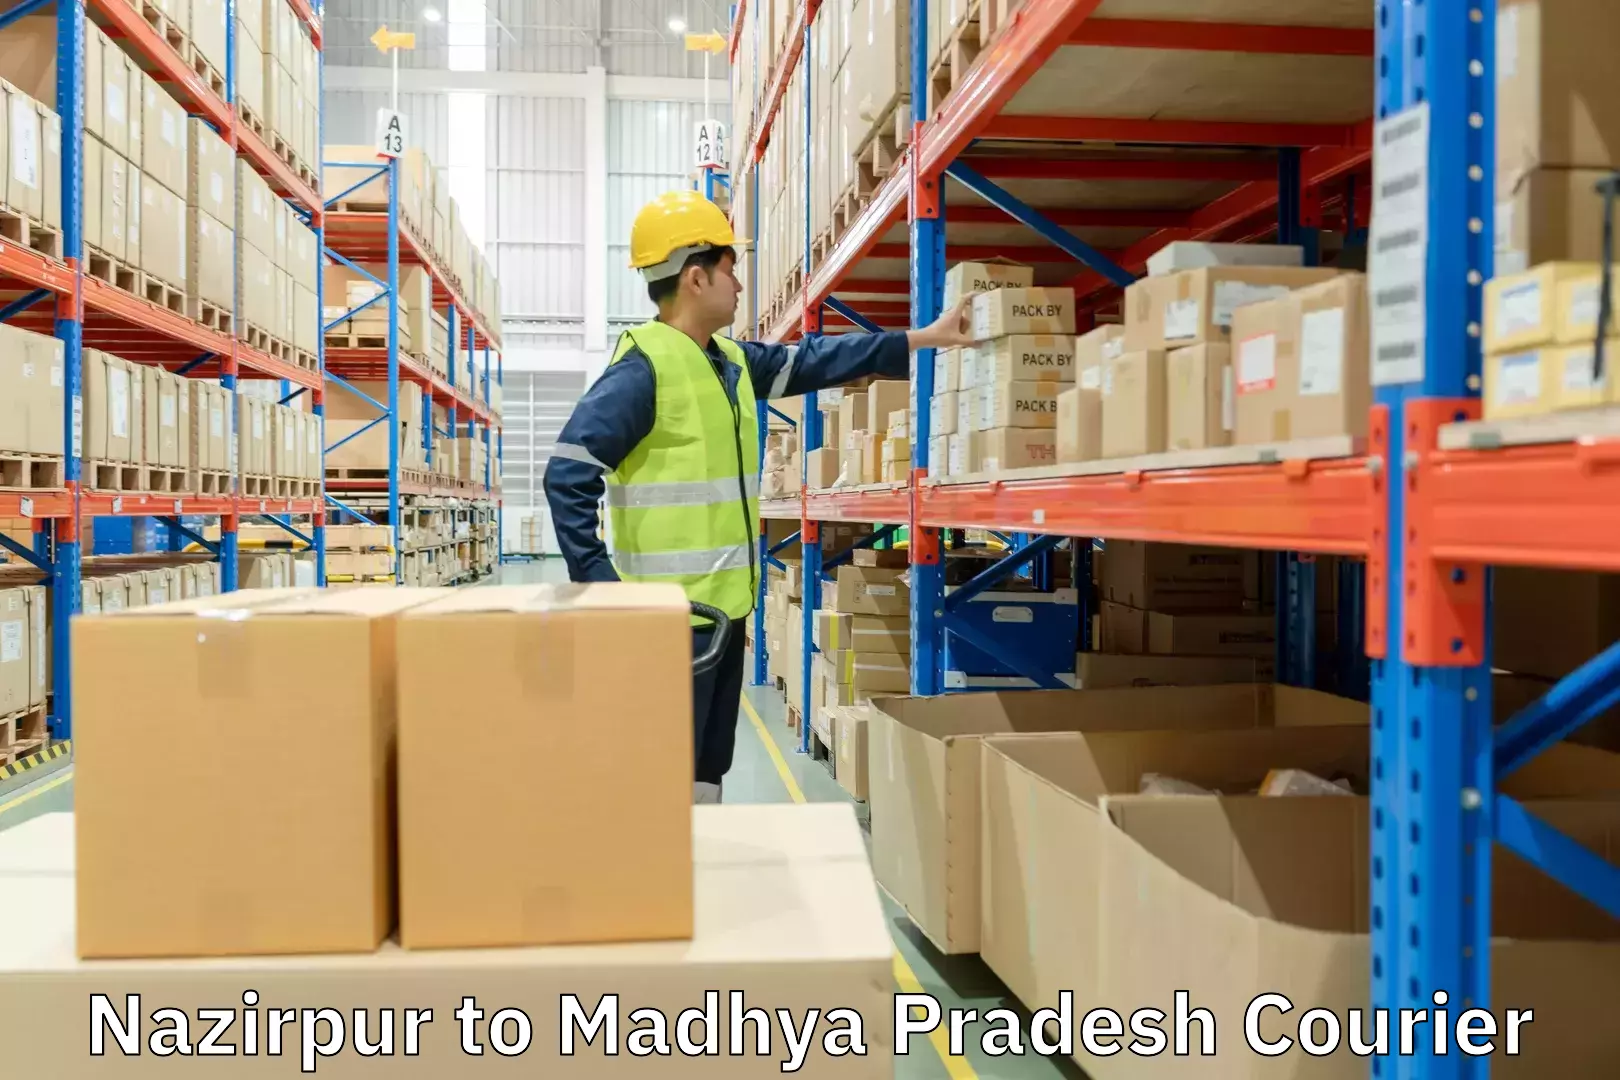 Premium courier solutions Nazirpur to Madhya Pradesh